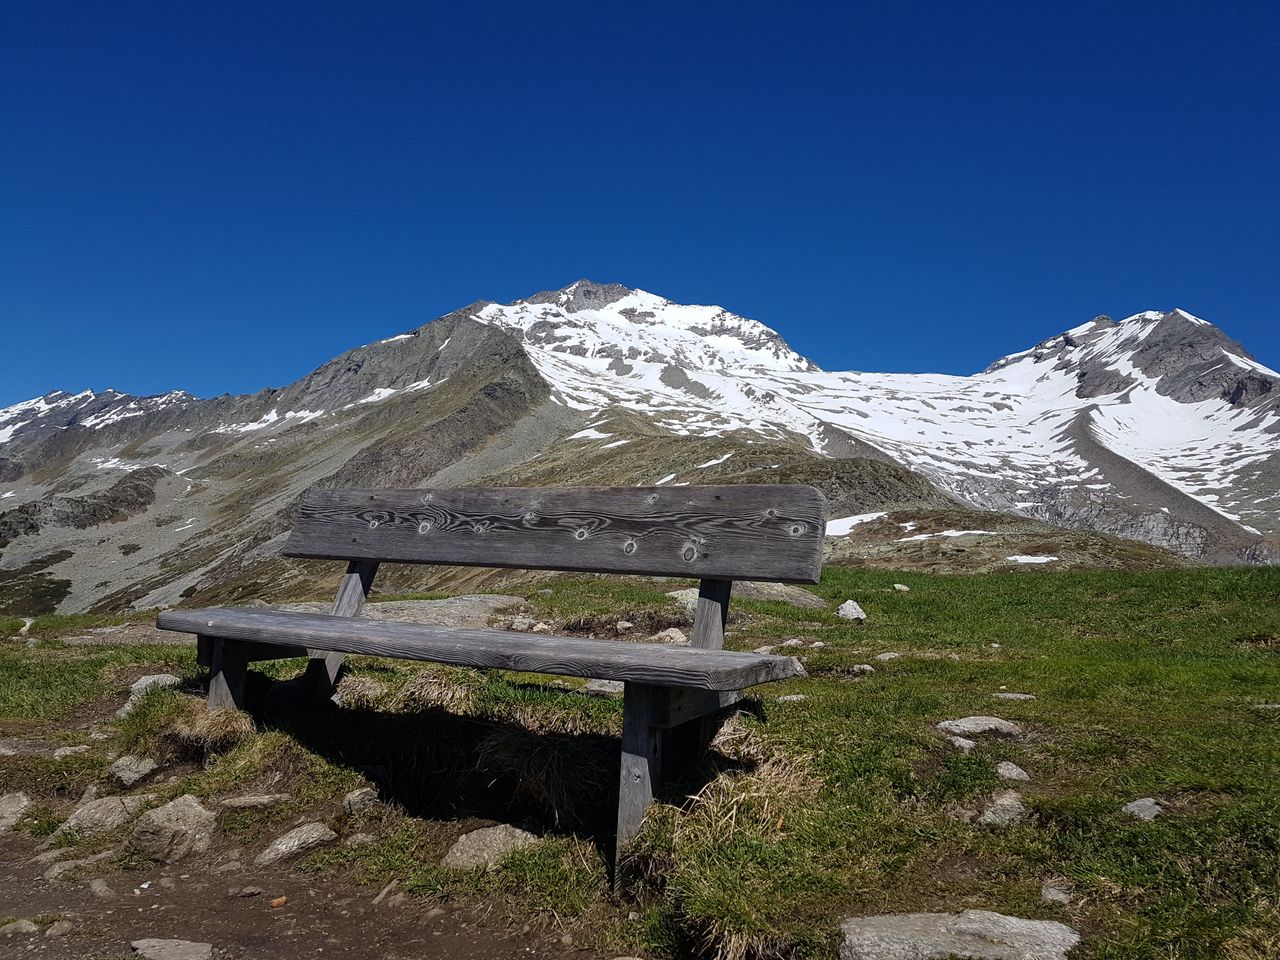 Sommer in Tirol - 6 Tage bei Mayrhofen